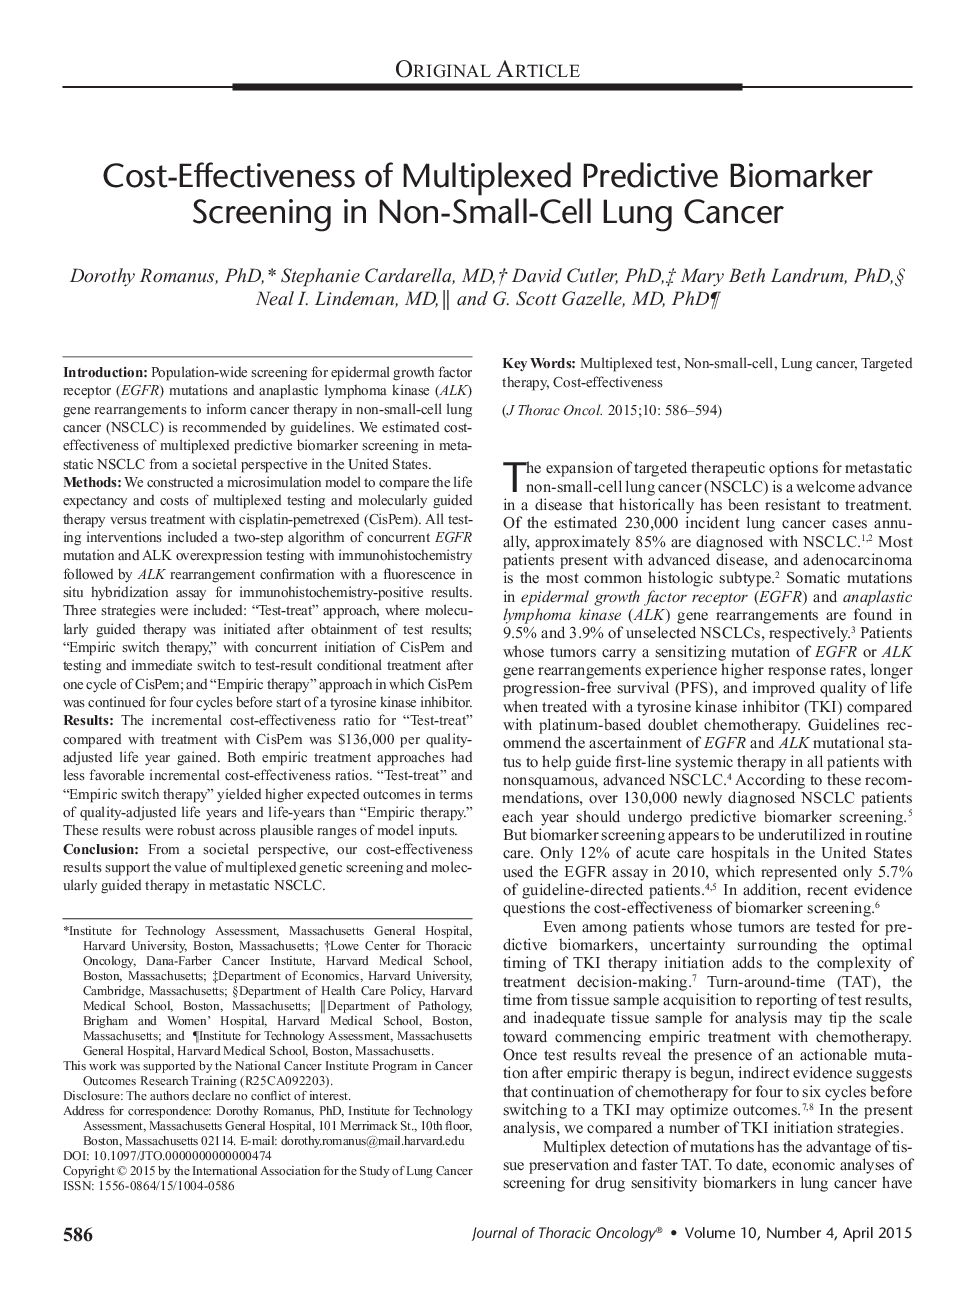 هزینه-اثربخشی غربالگری پیش بینی کننده بیومارکرت چندگانه در سرطان ریه های غیر سلولی 